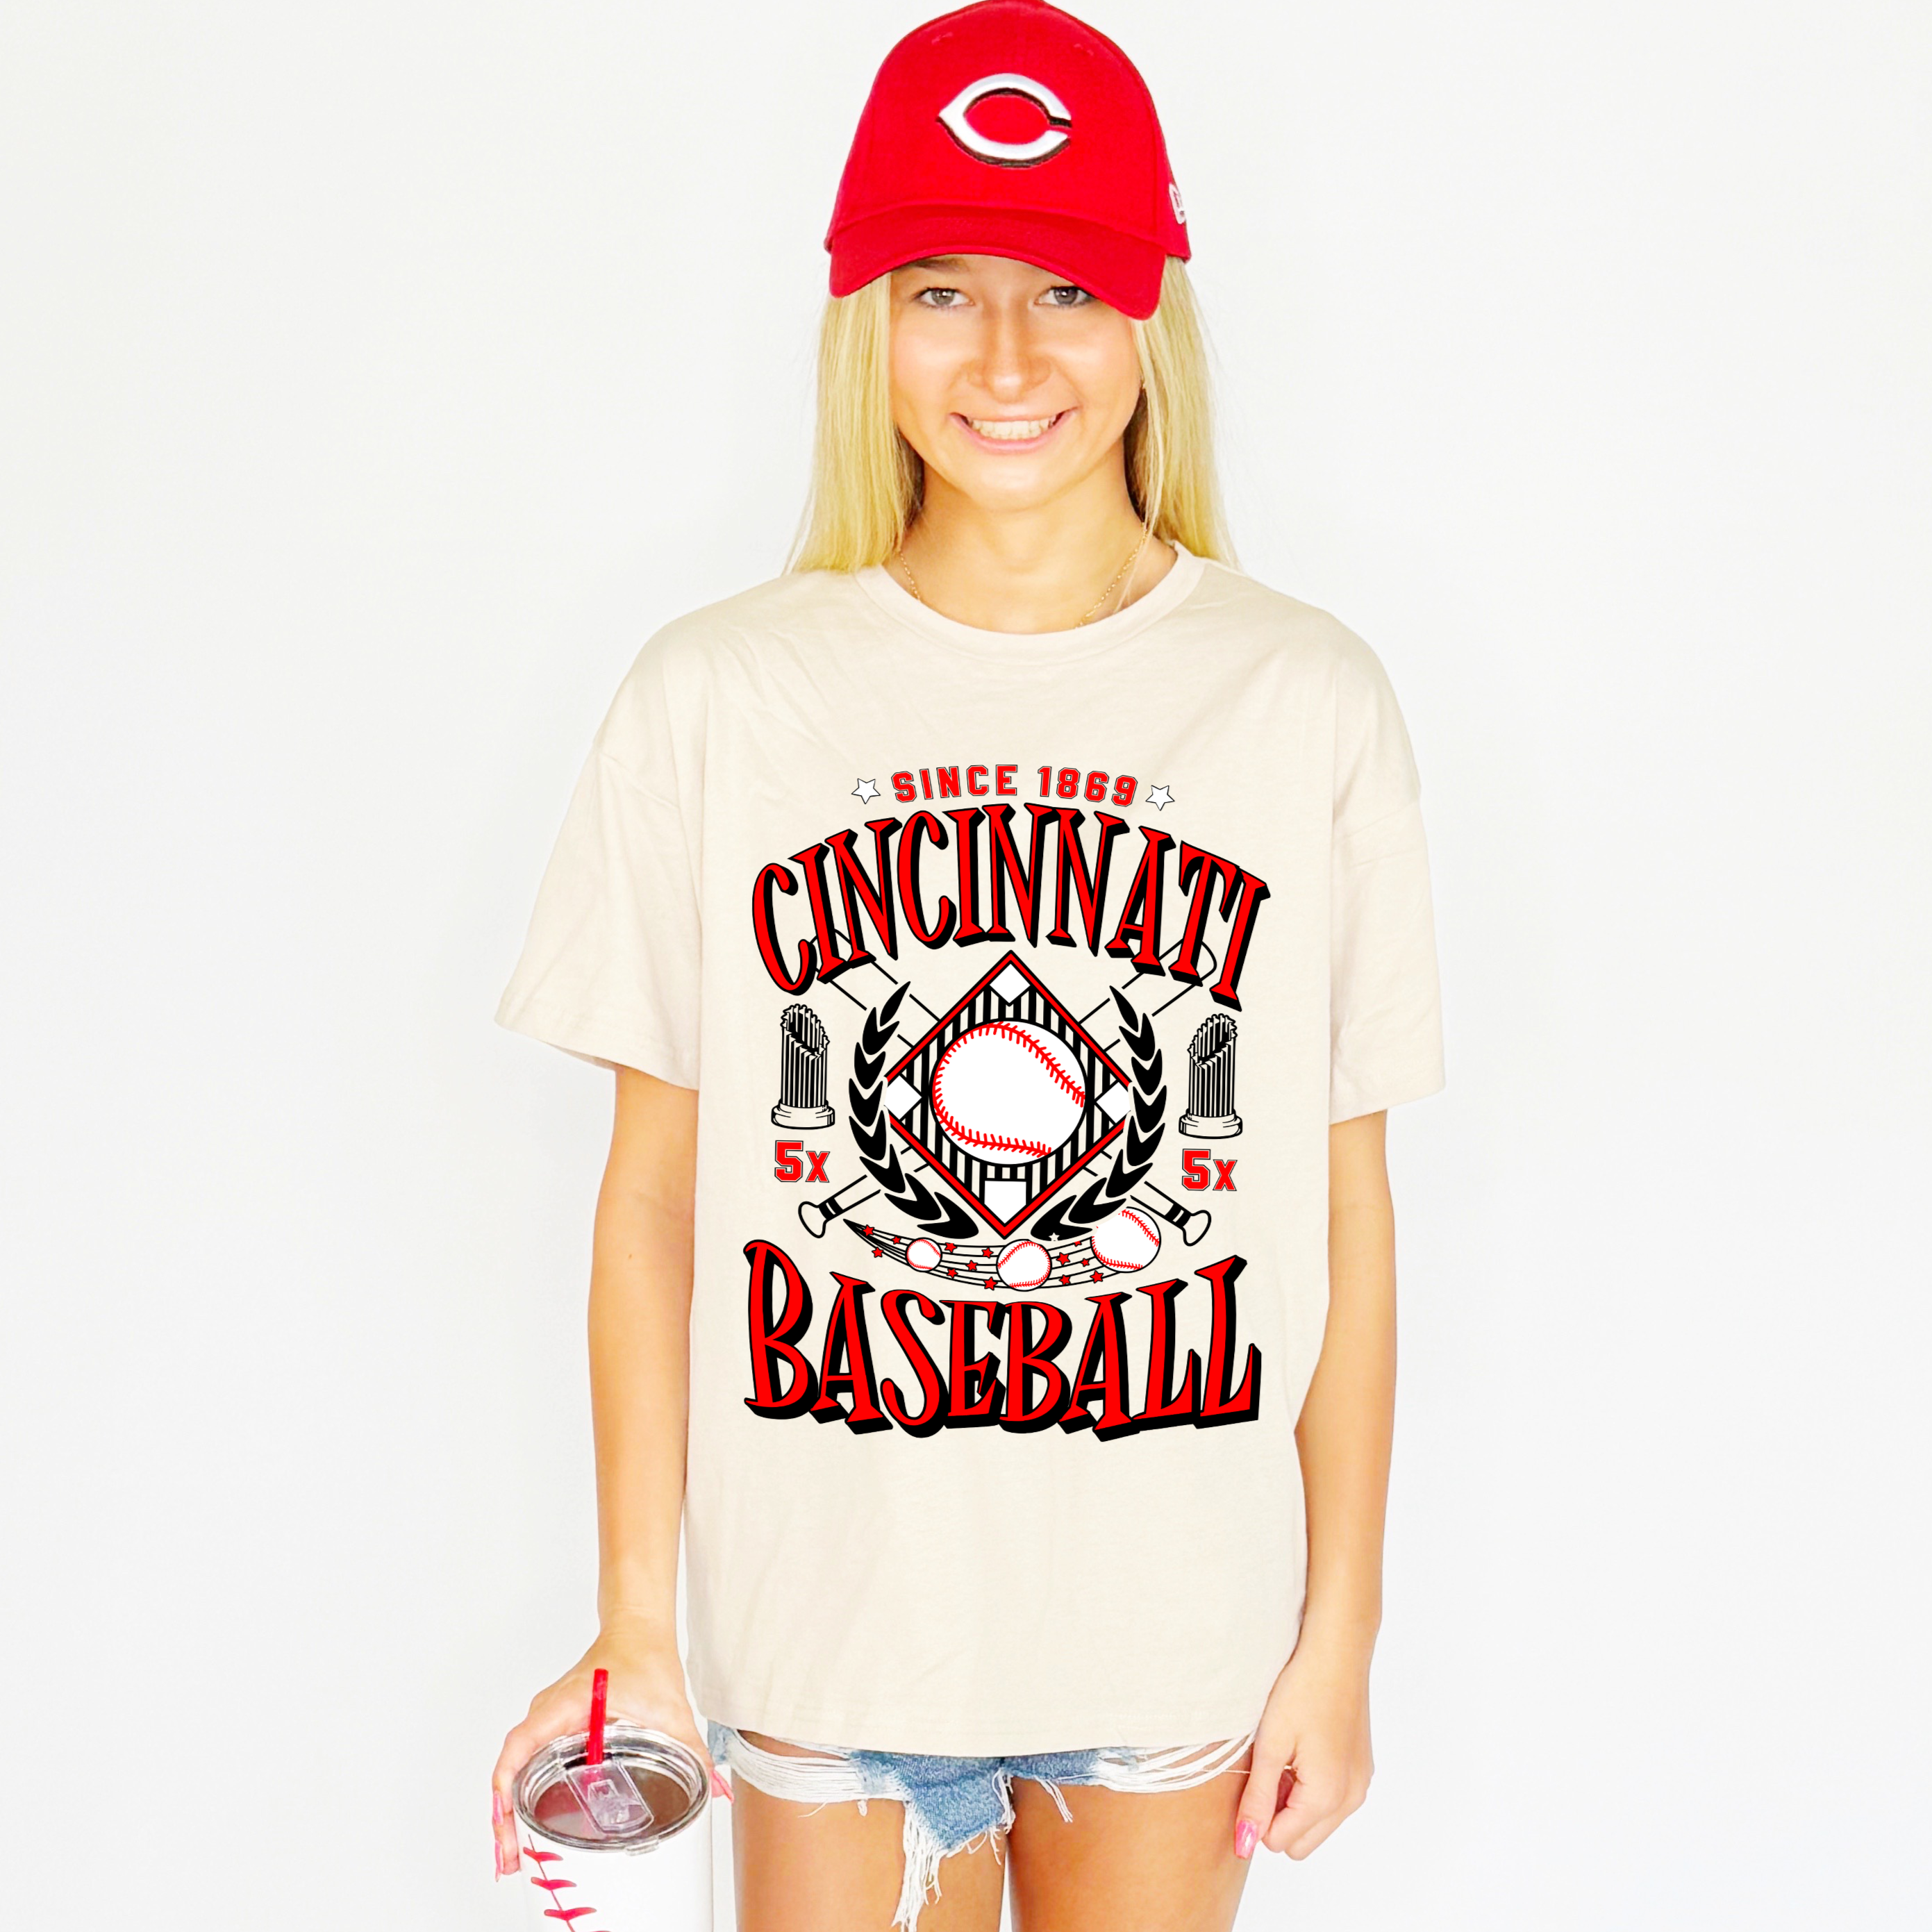 Cincinnati Baseball Team Youth & Adult tee